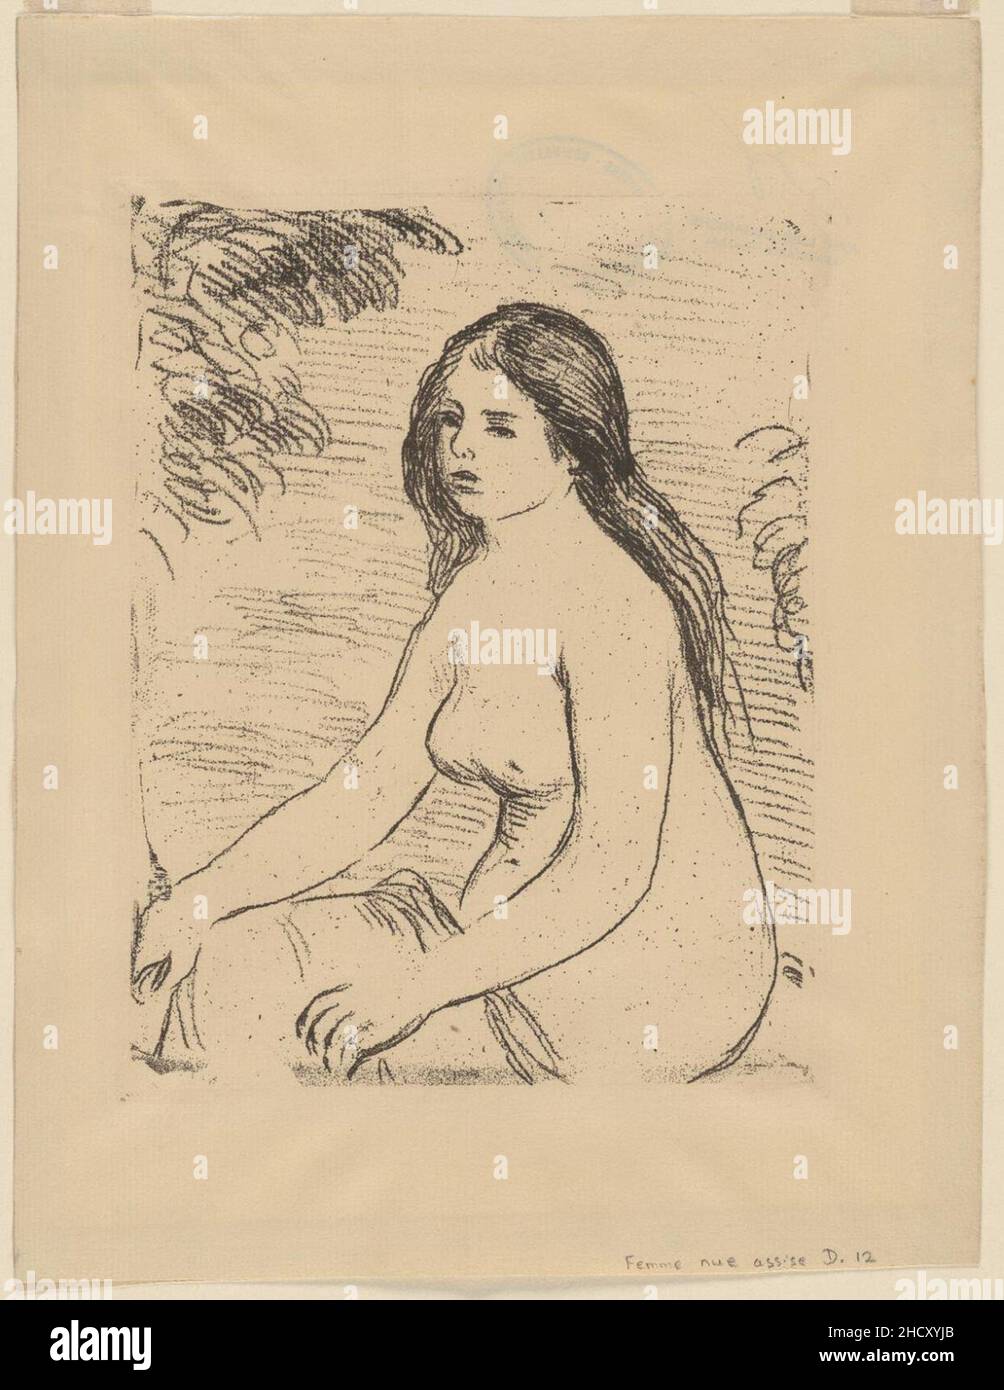 Renoir - Femme Nue Assise, 1950-81-95. Stock Photo